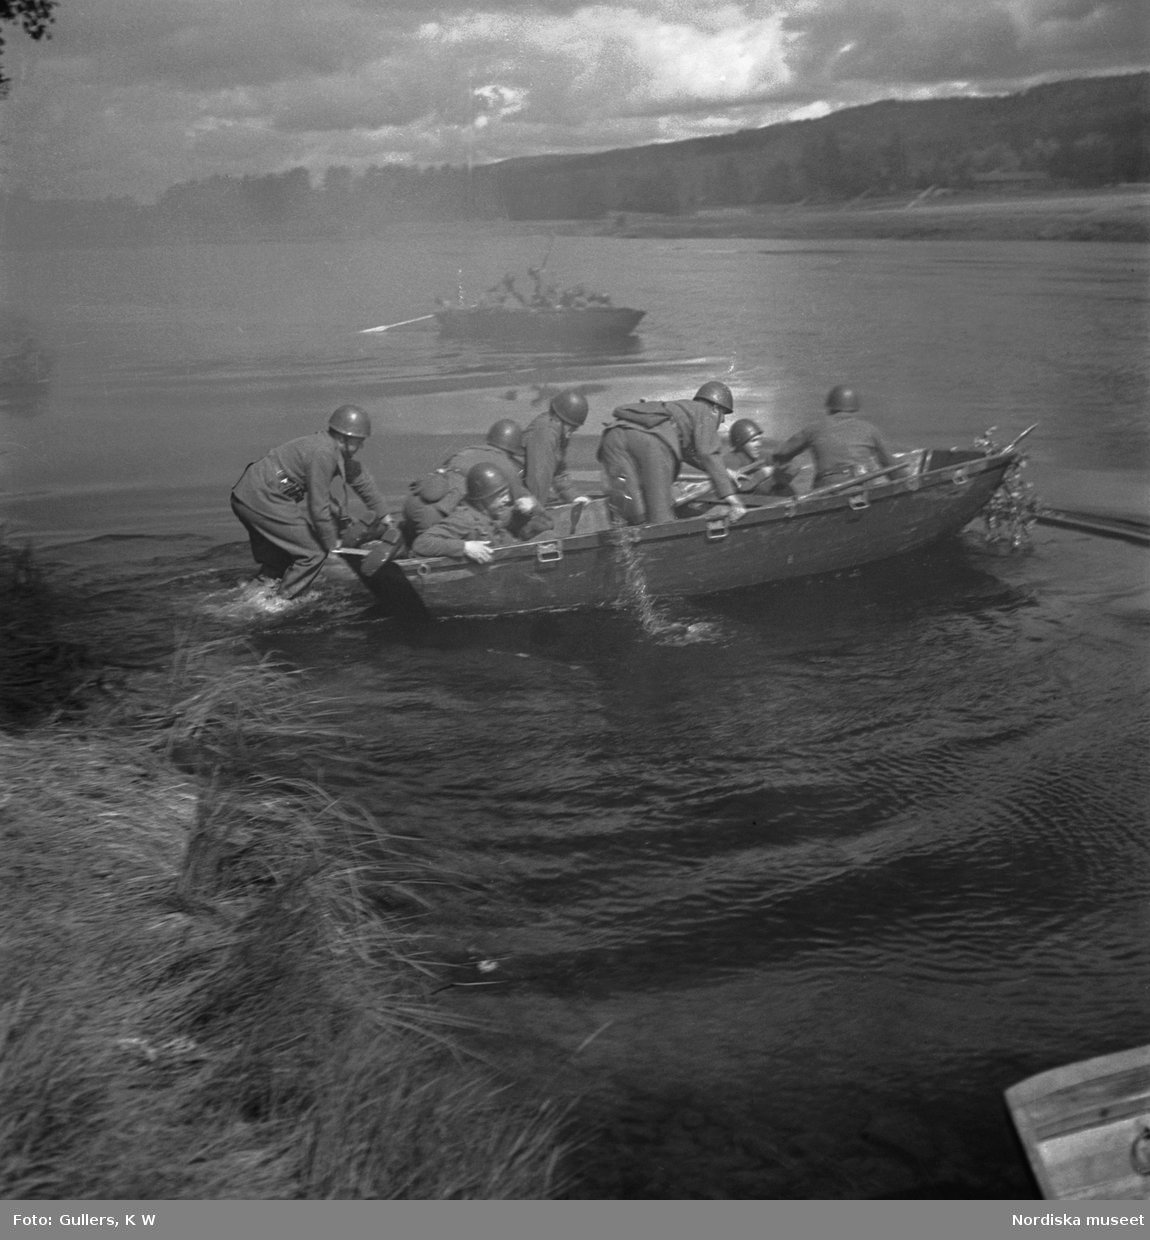 Militärövning med soldater i roddbåt